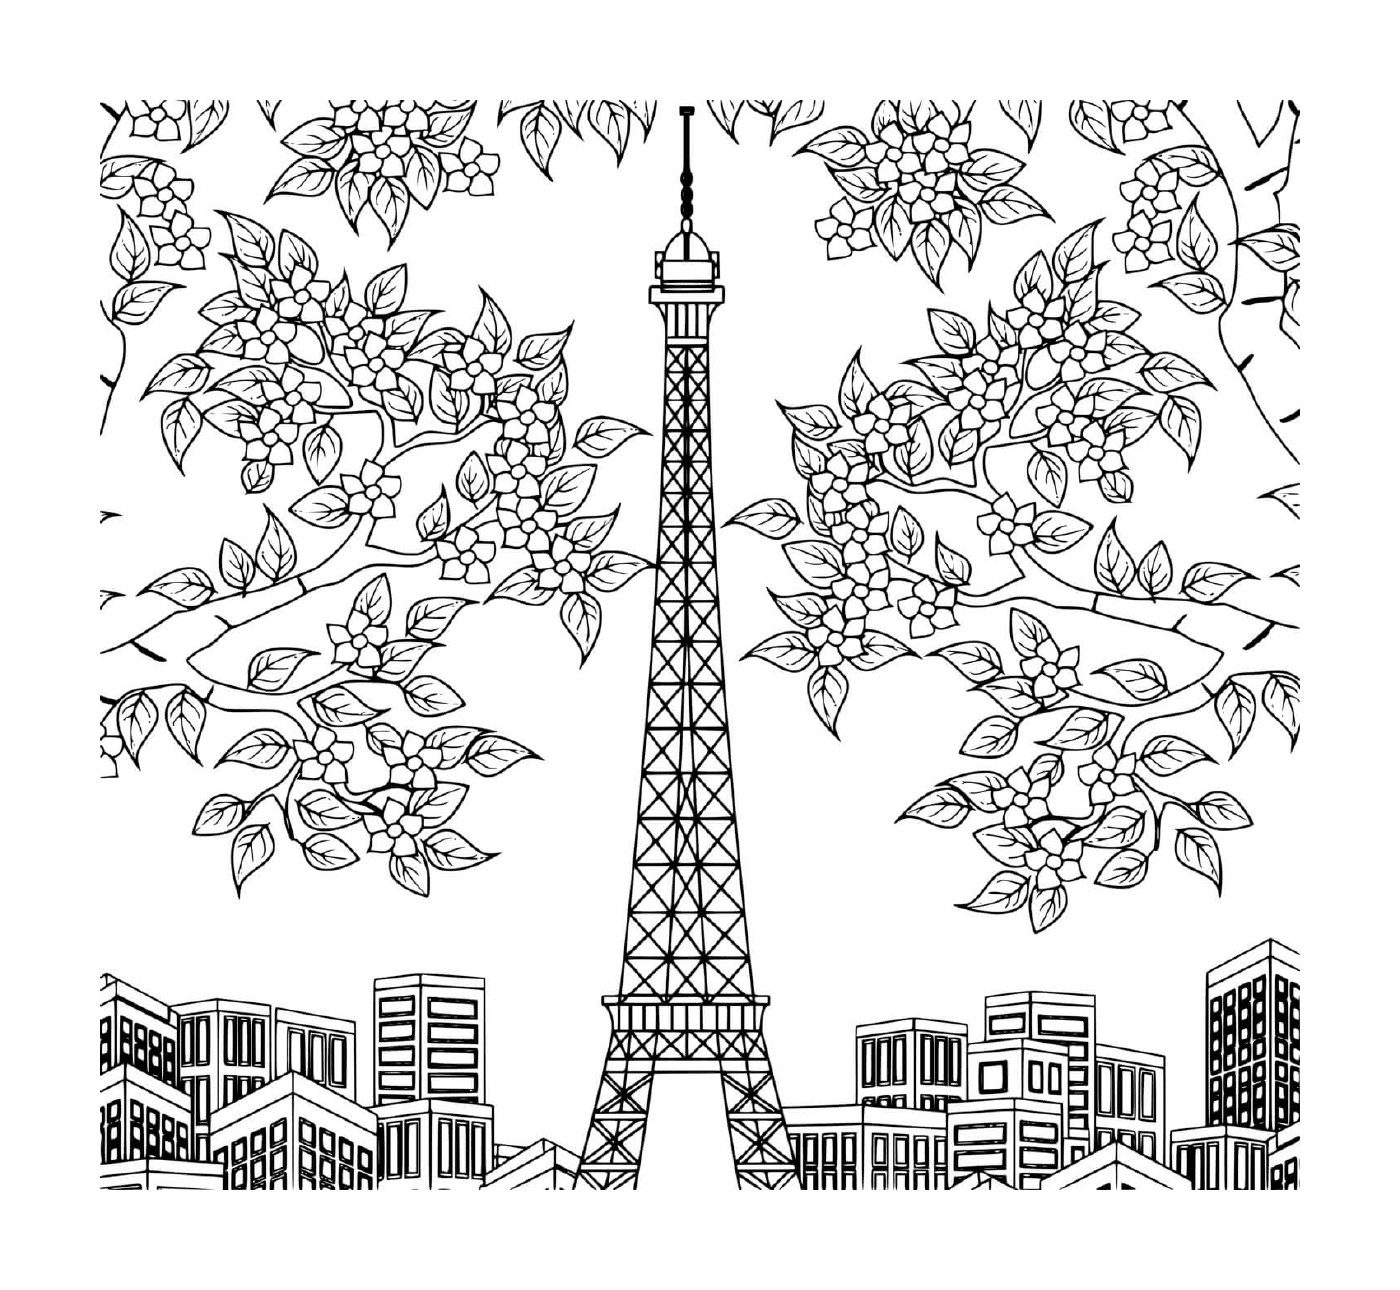  Torre Eiffel rodeada de árboles, flores y edificios 